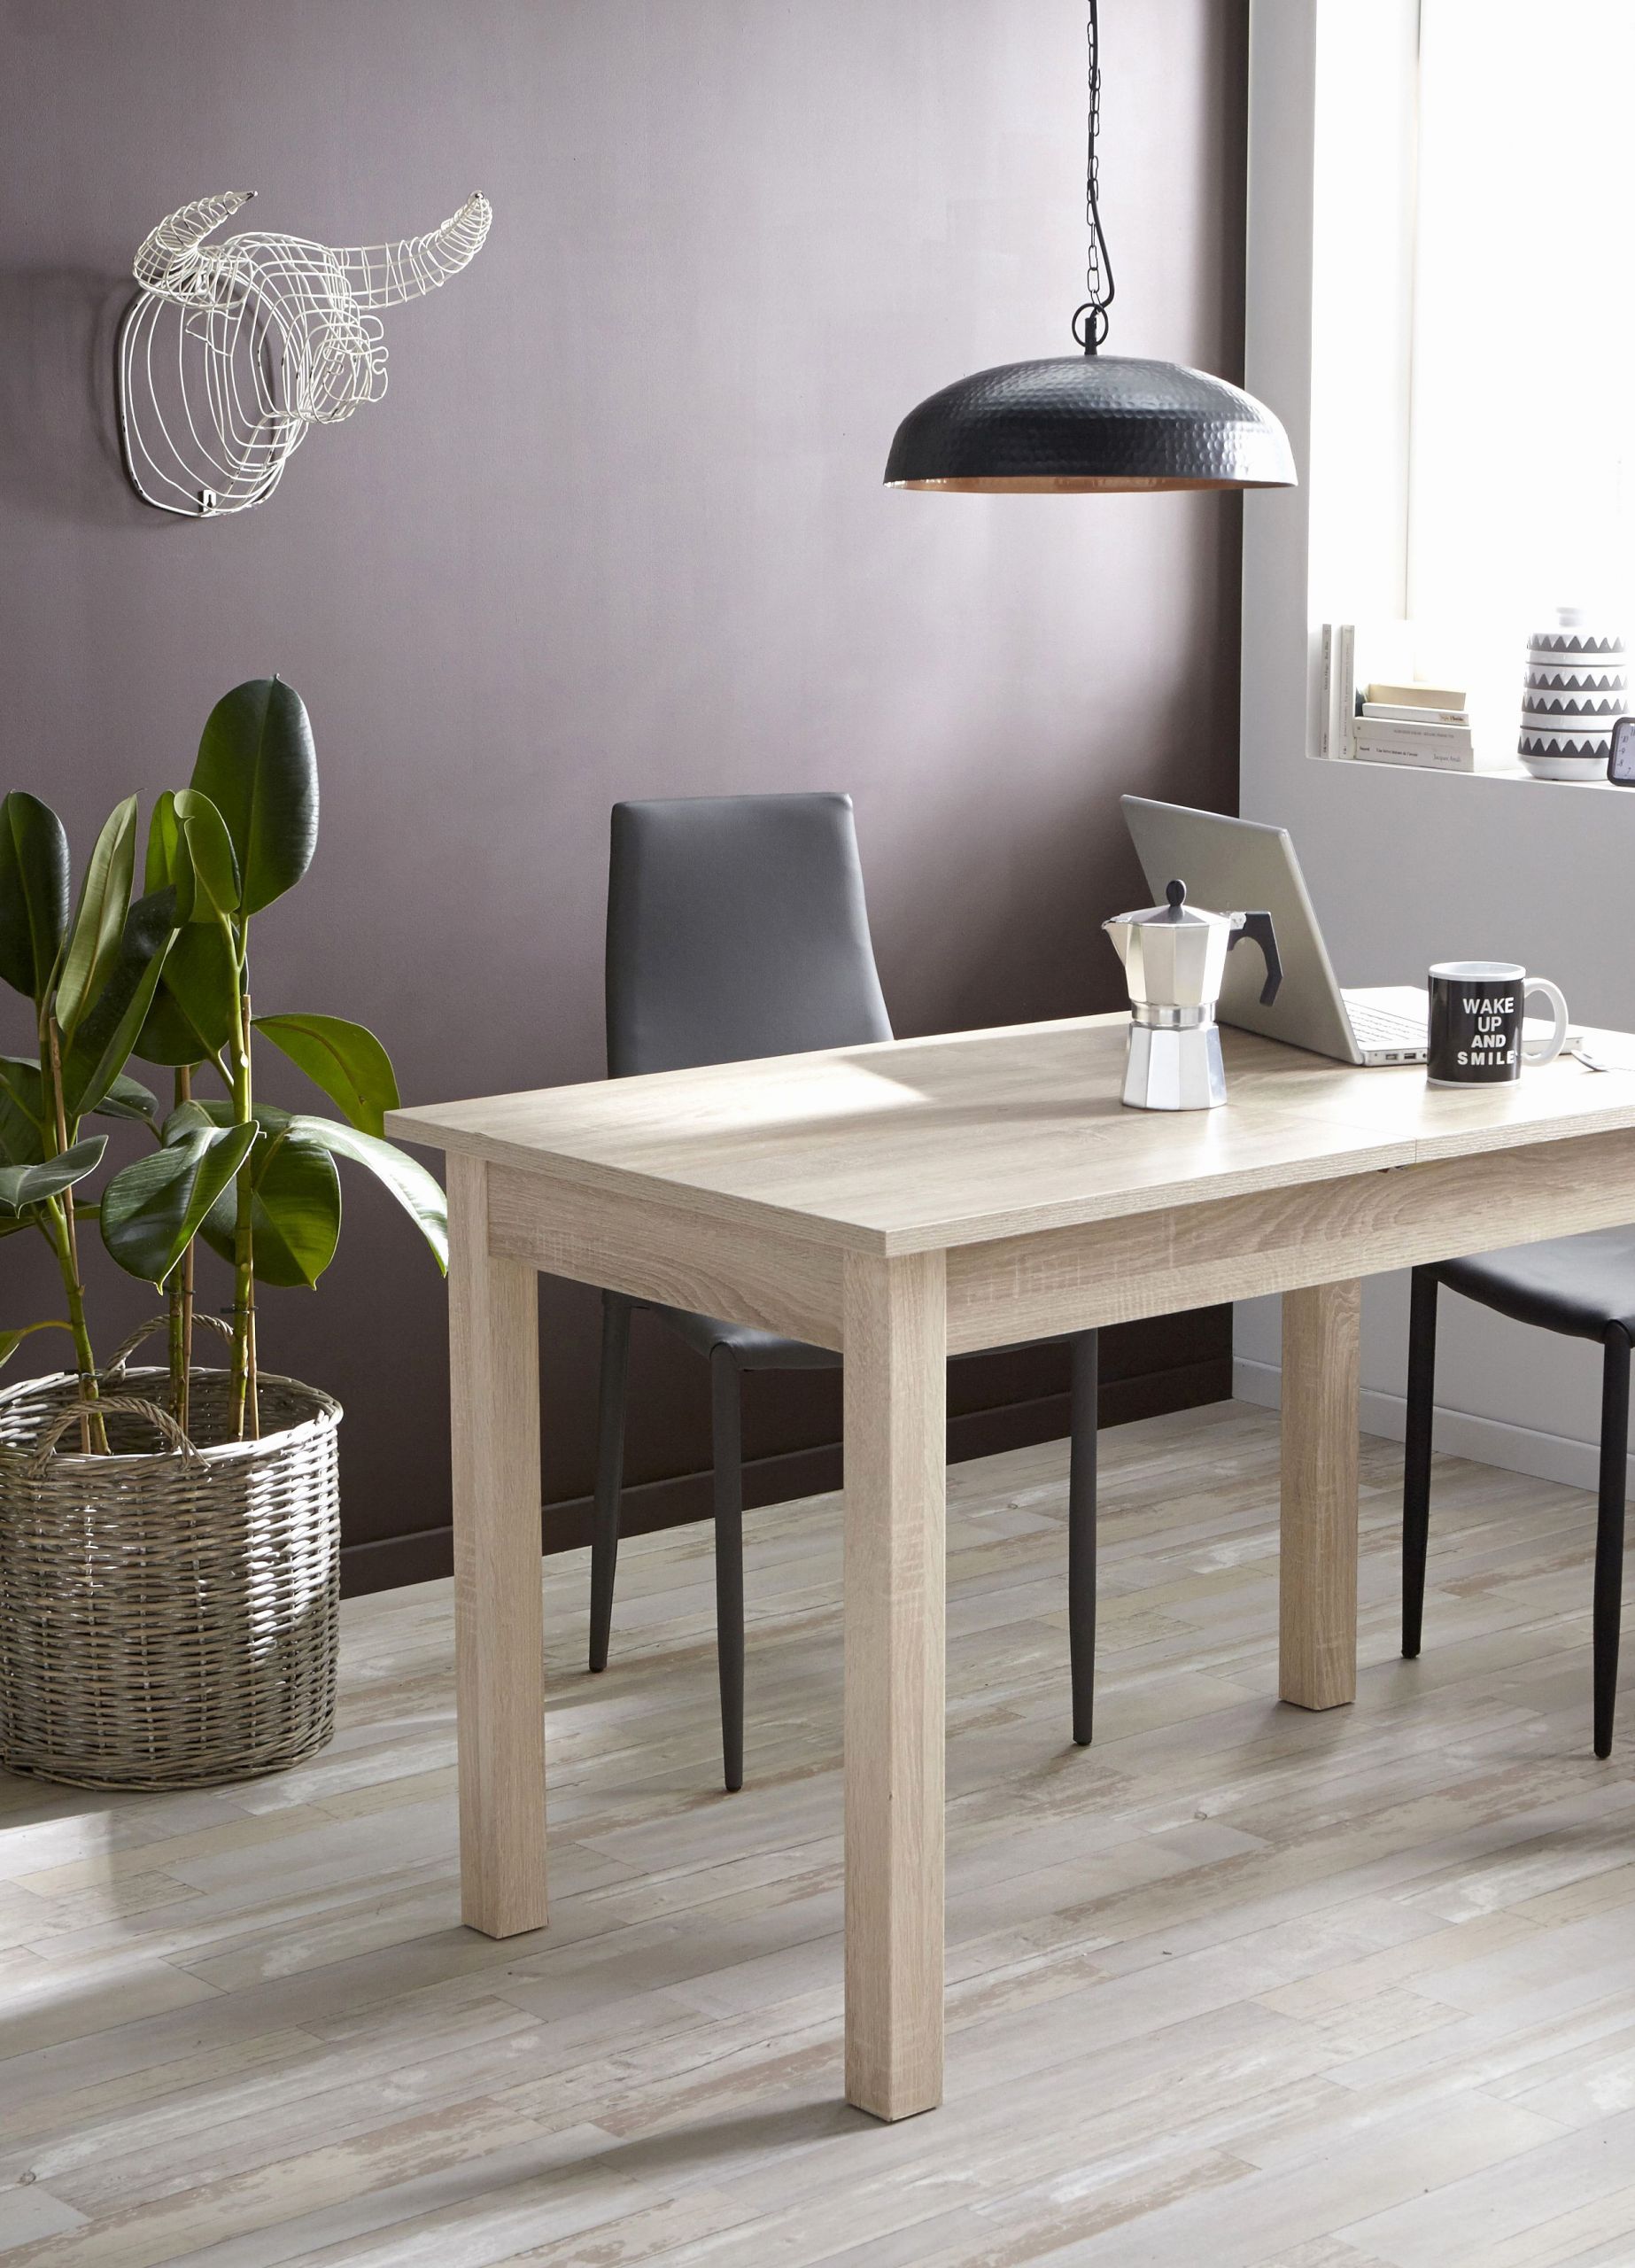 chaise et table de jardin elegant meuble bois et fer table de jardin rectangulaire chaise fer de chaise et table de jardin scaled